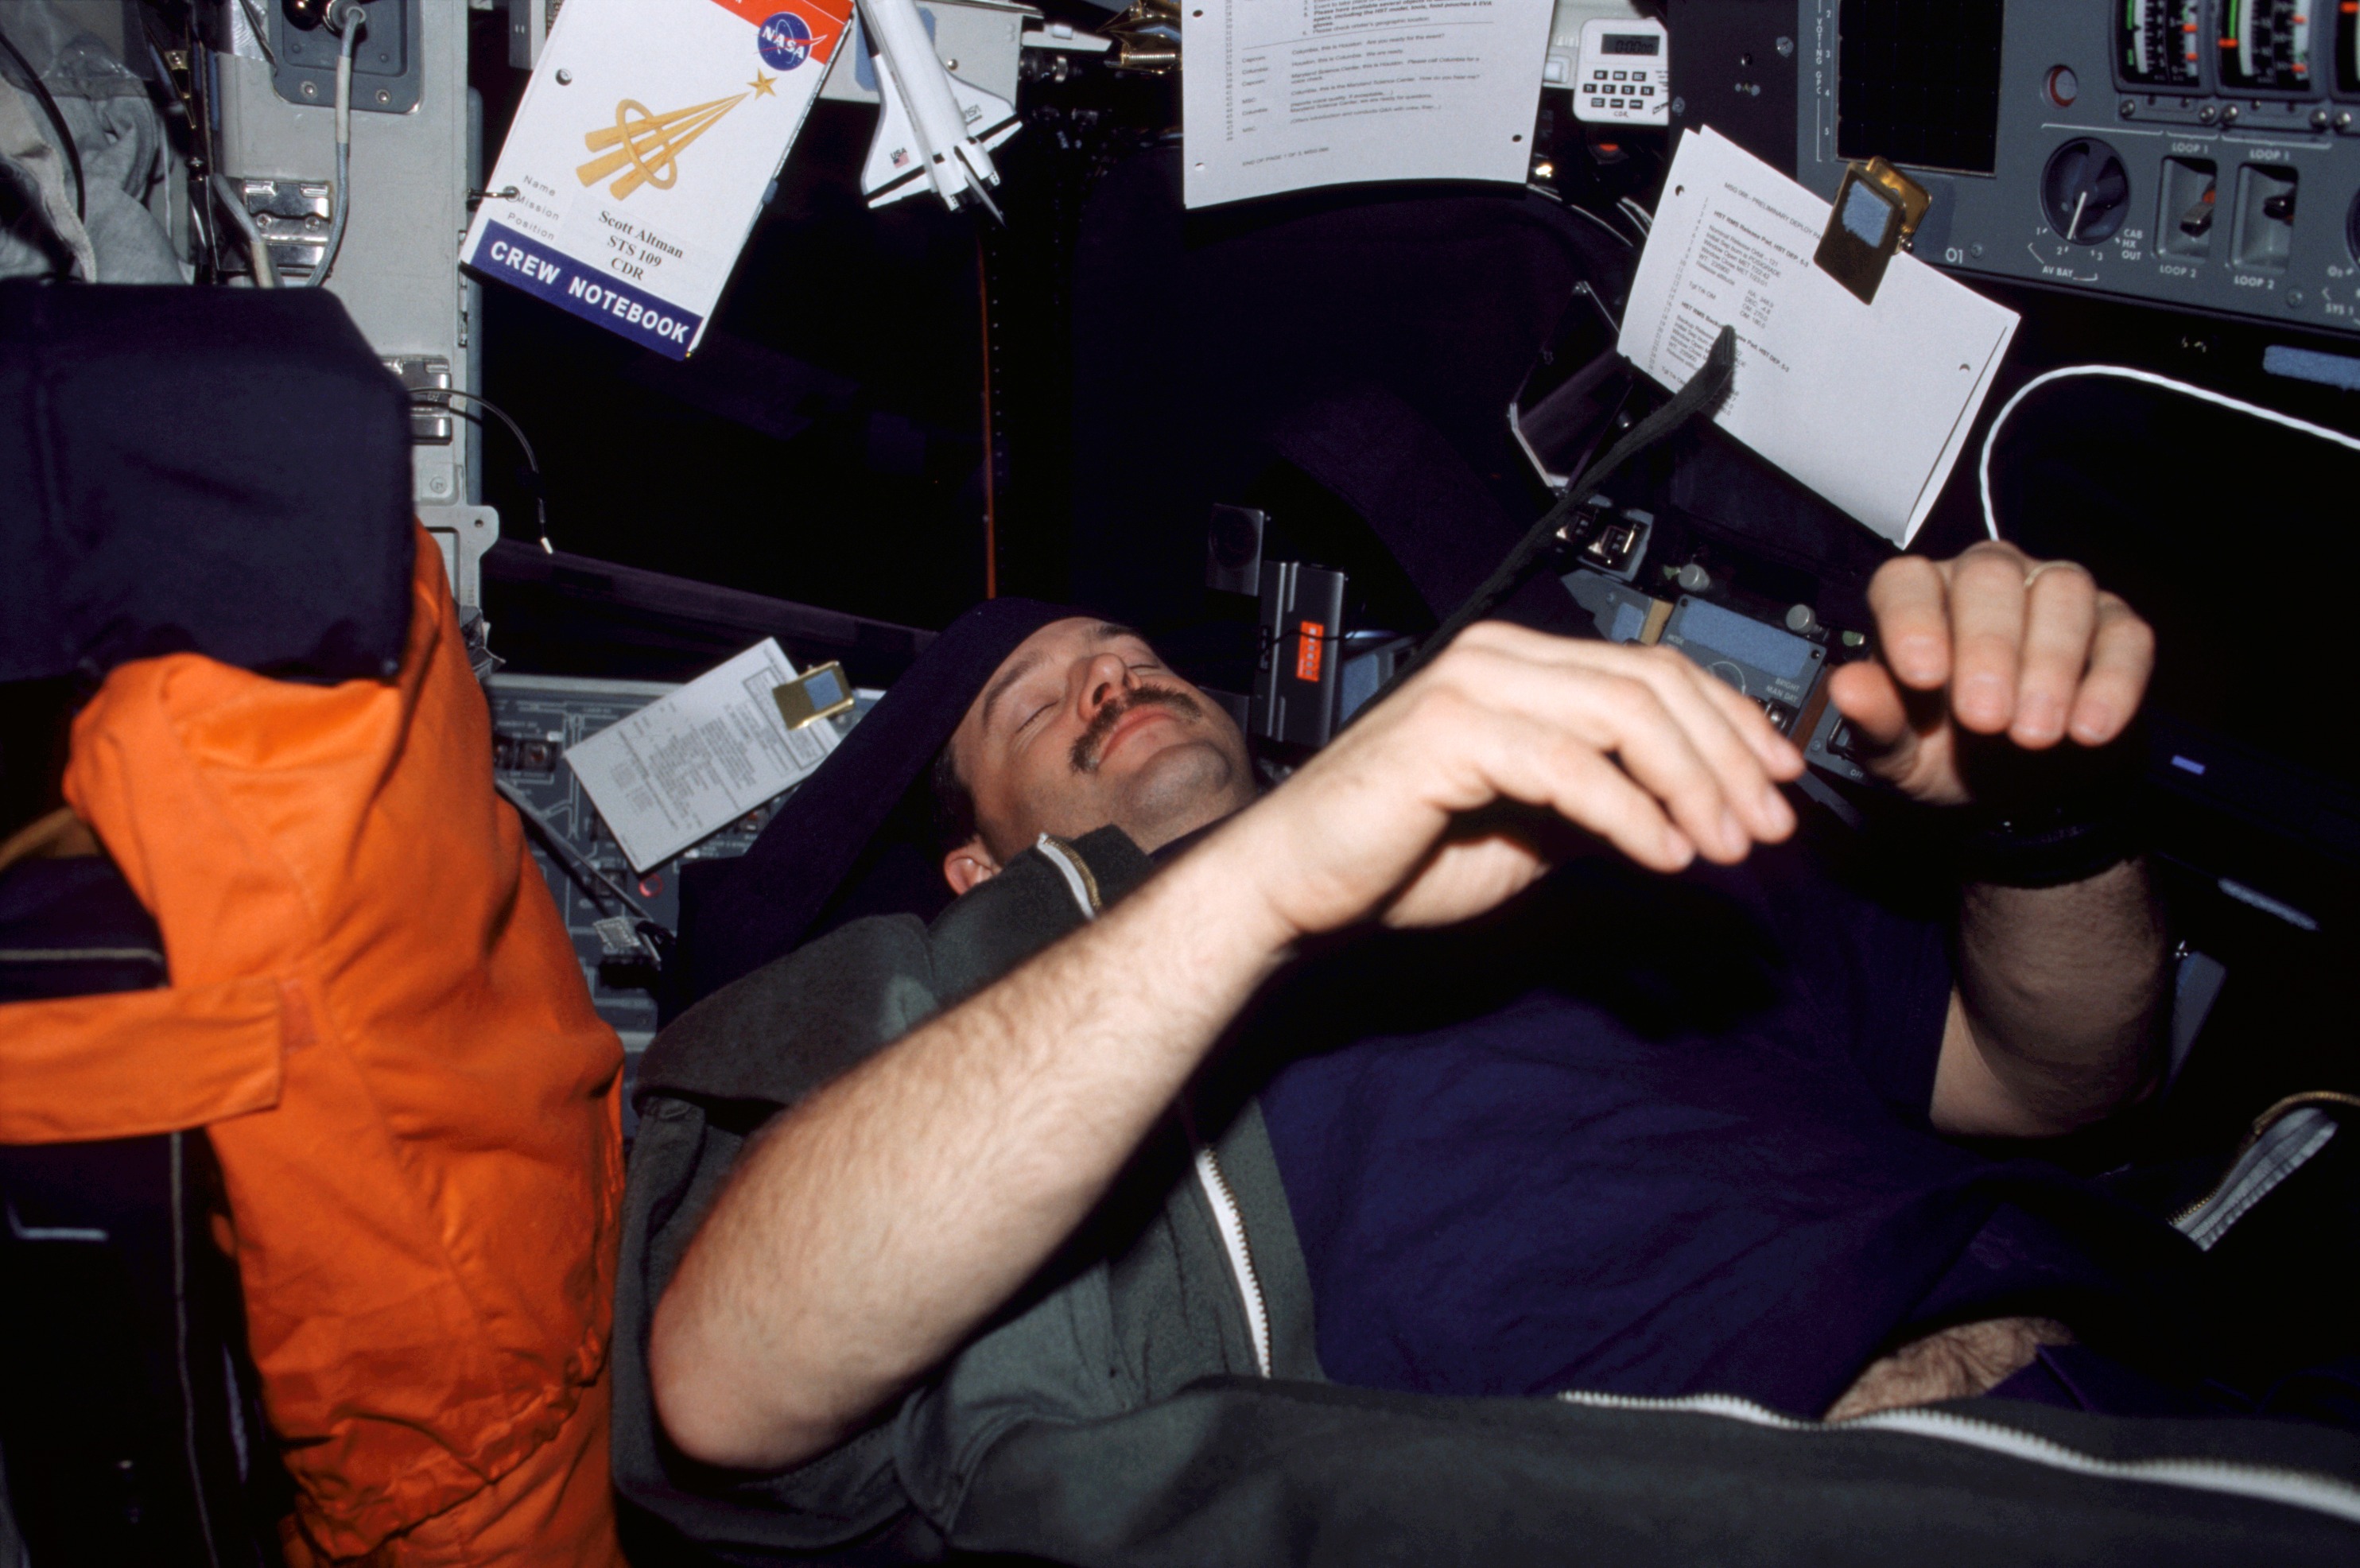 An astronaut sleeps on the space shuttle